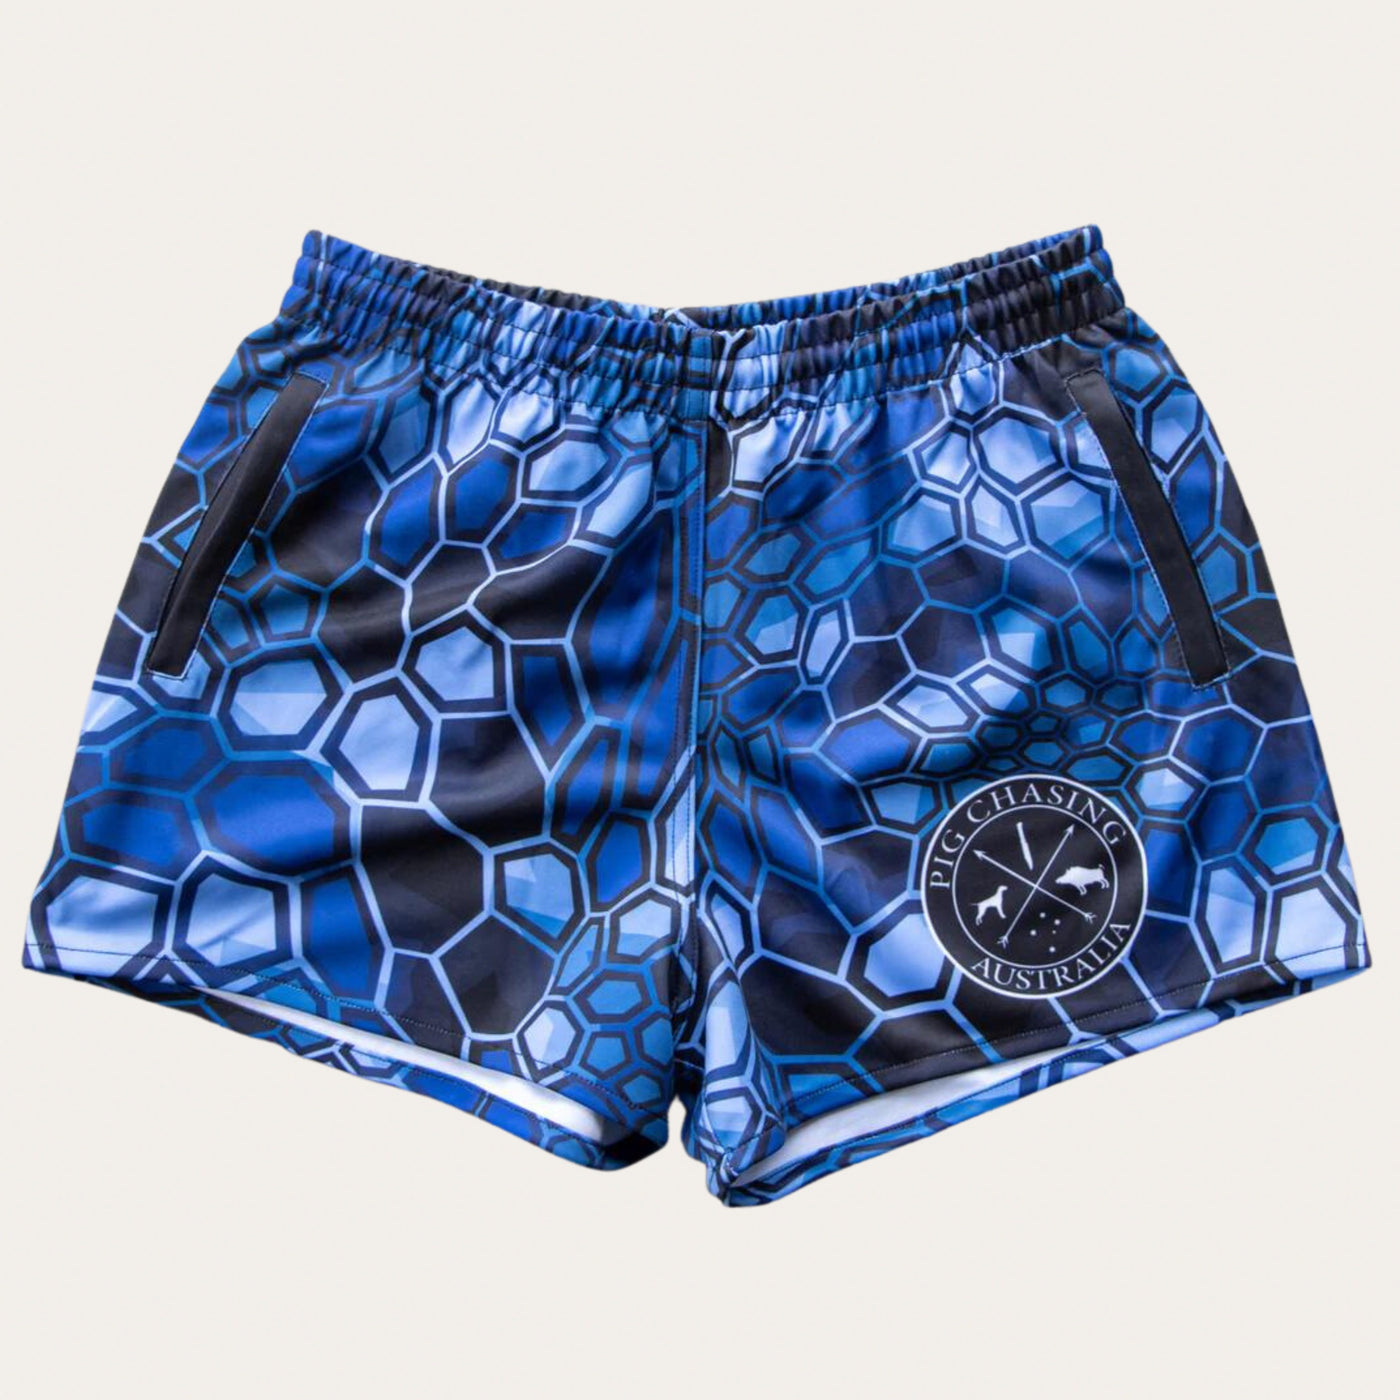 Digital Camo Footy Shorts - Blue